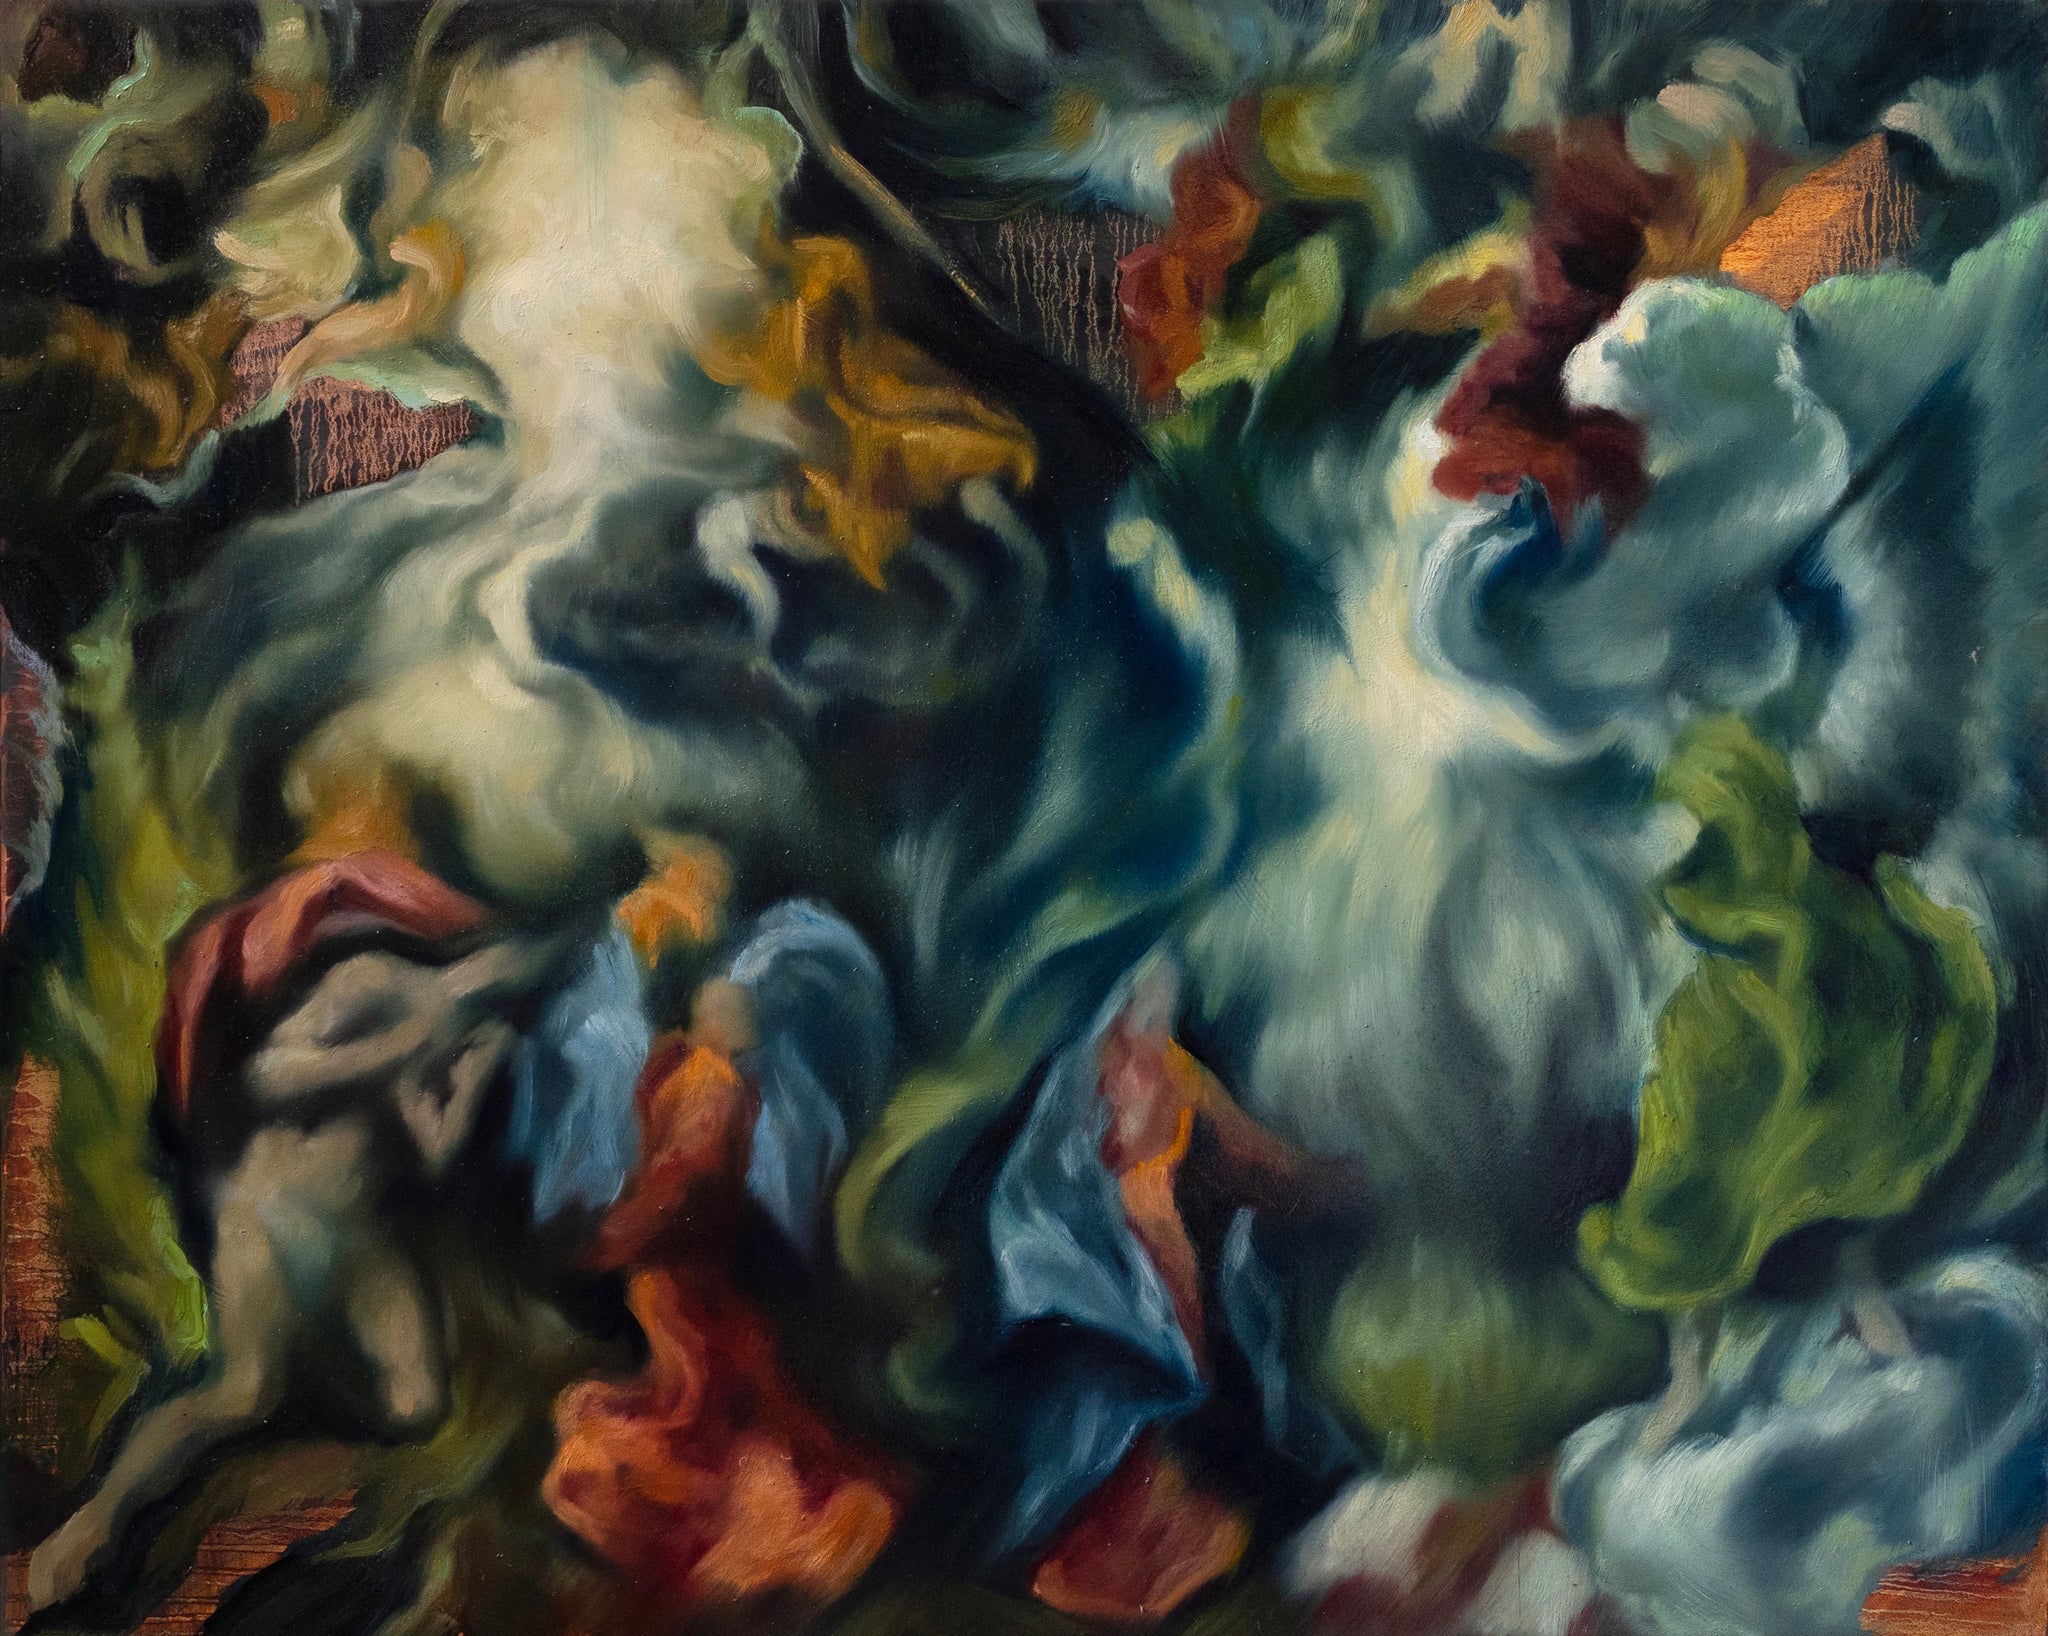 Maria Kreyn, "El Greco's fluid dynamics"